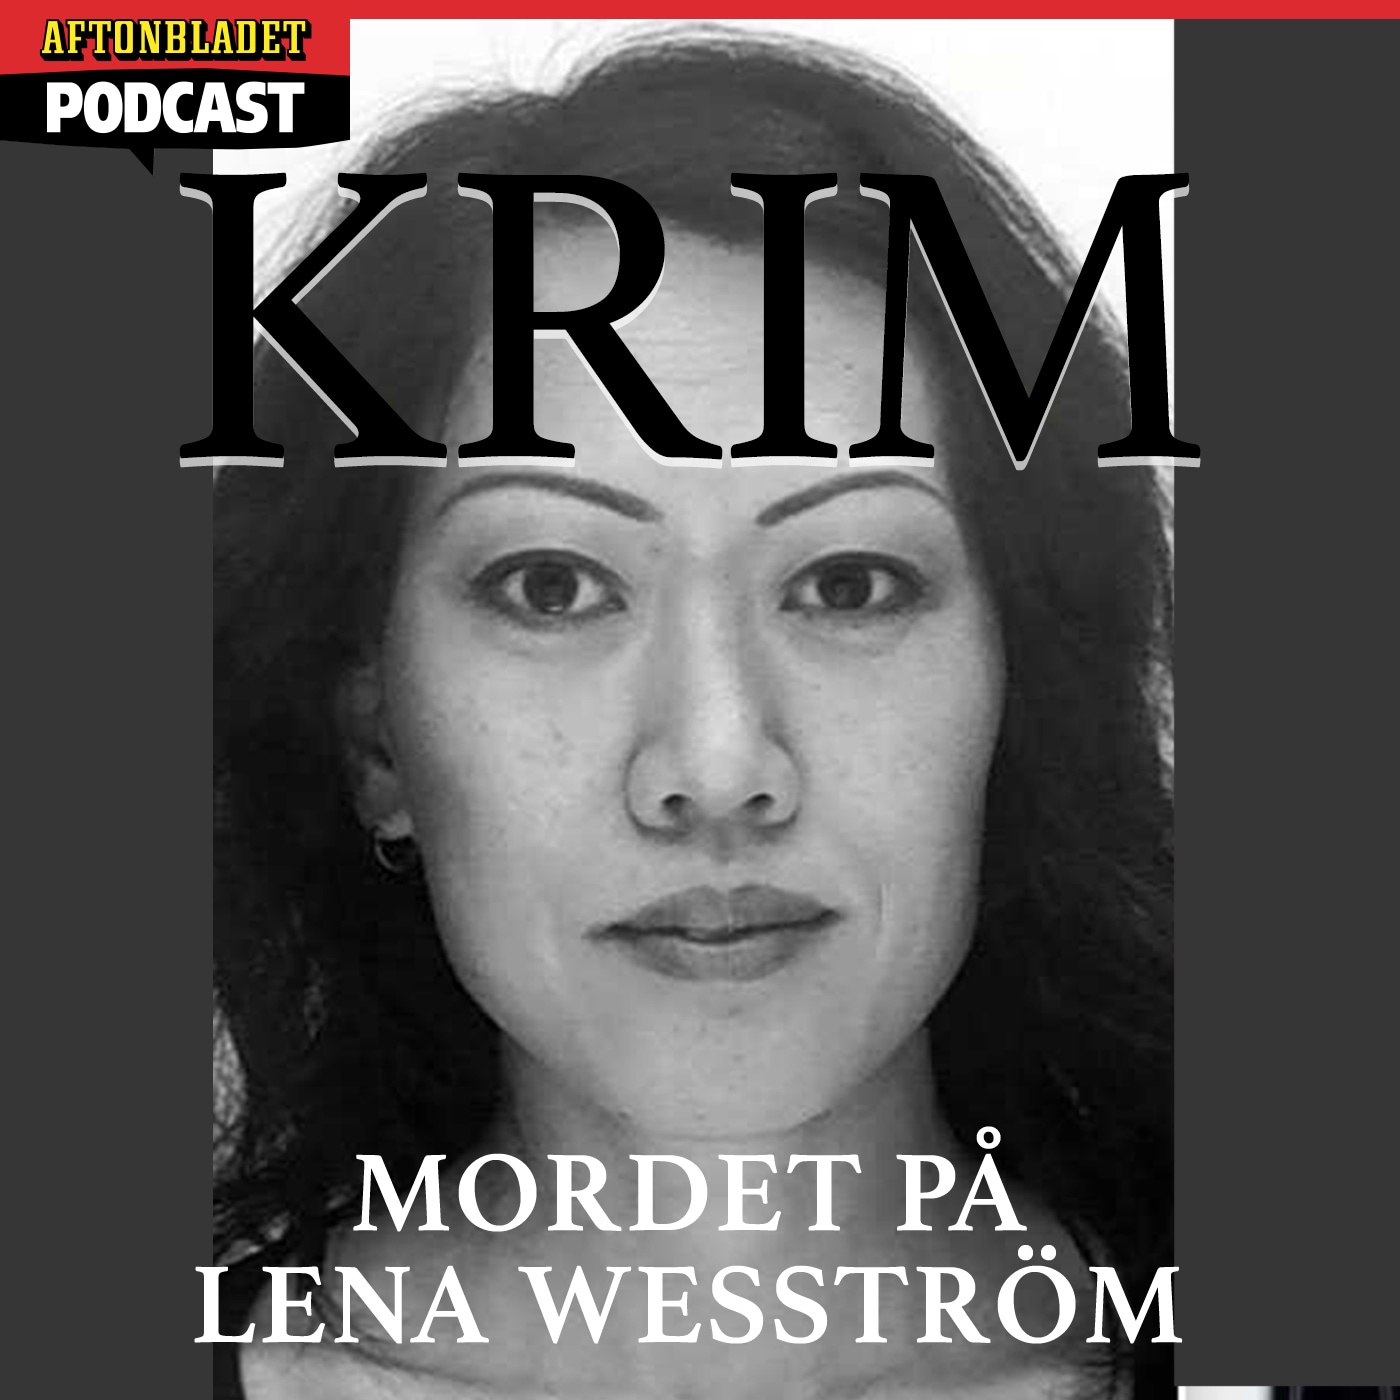 PLUS - Mordet på Lena Wesström Del 2